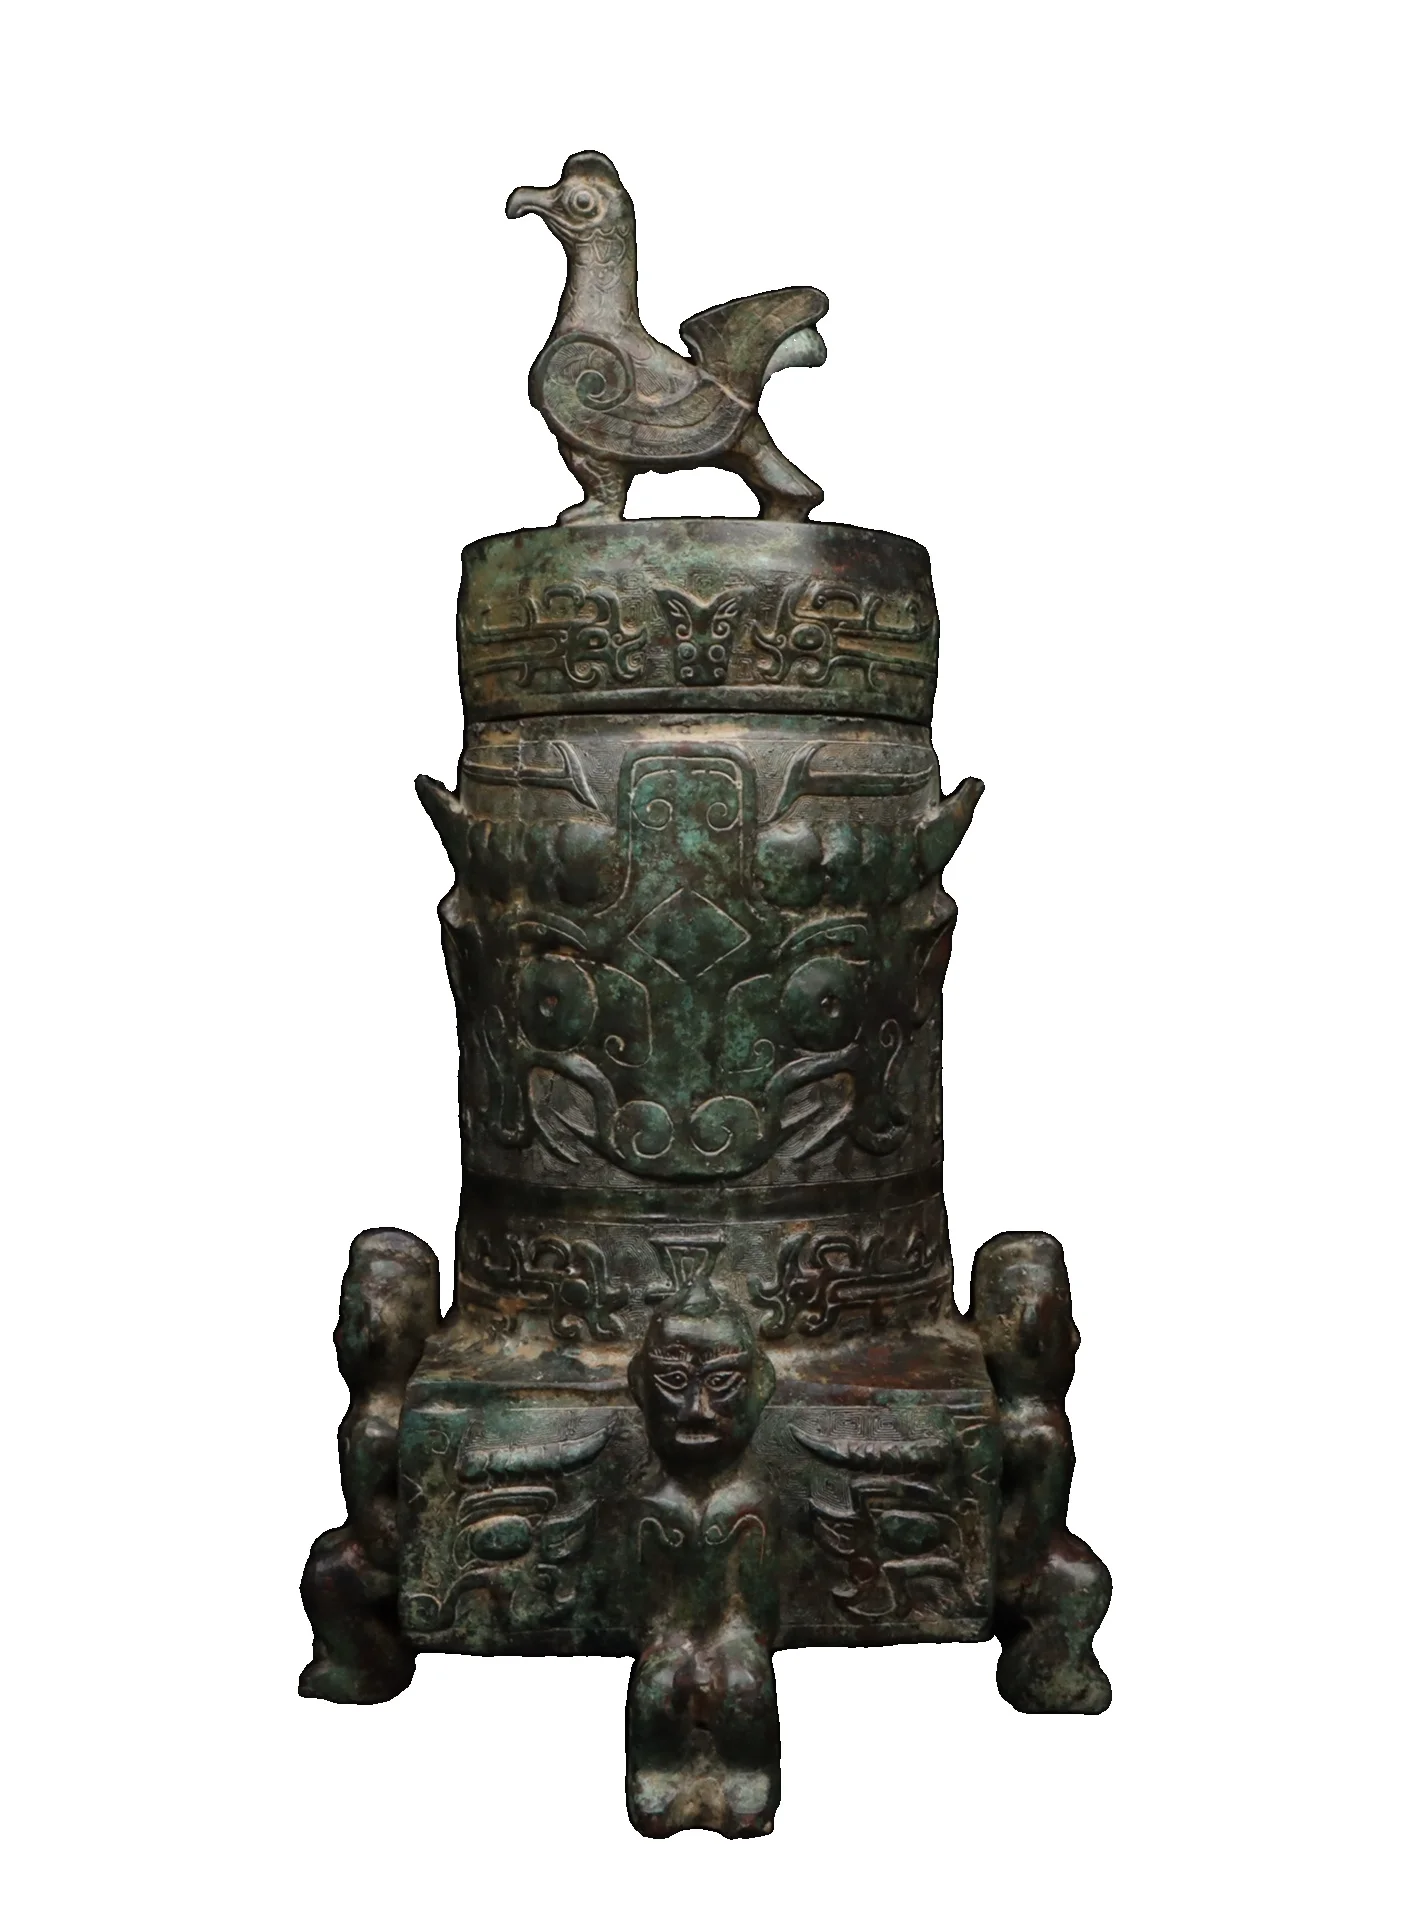 

Laojunlu Западная Чжоу бронзовая стоячая птица с лицом чудовища кадило под старину Бронзовый шедевр коллекция солдатичного китайского